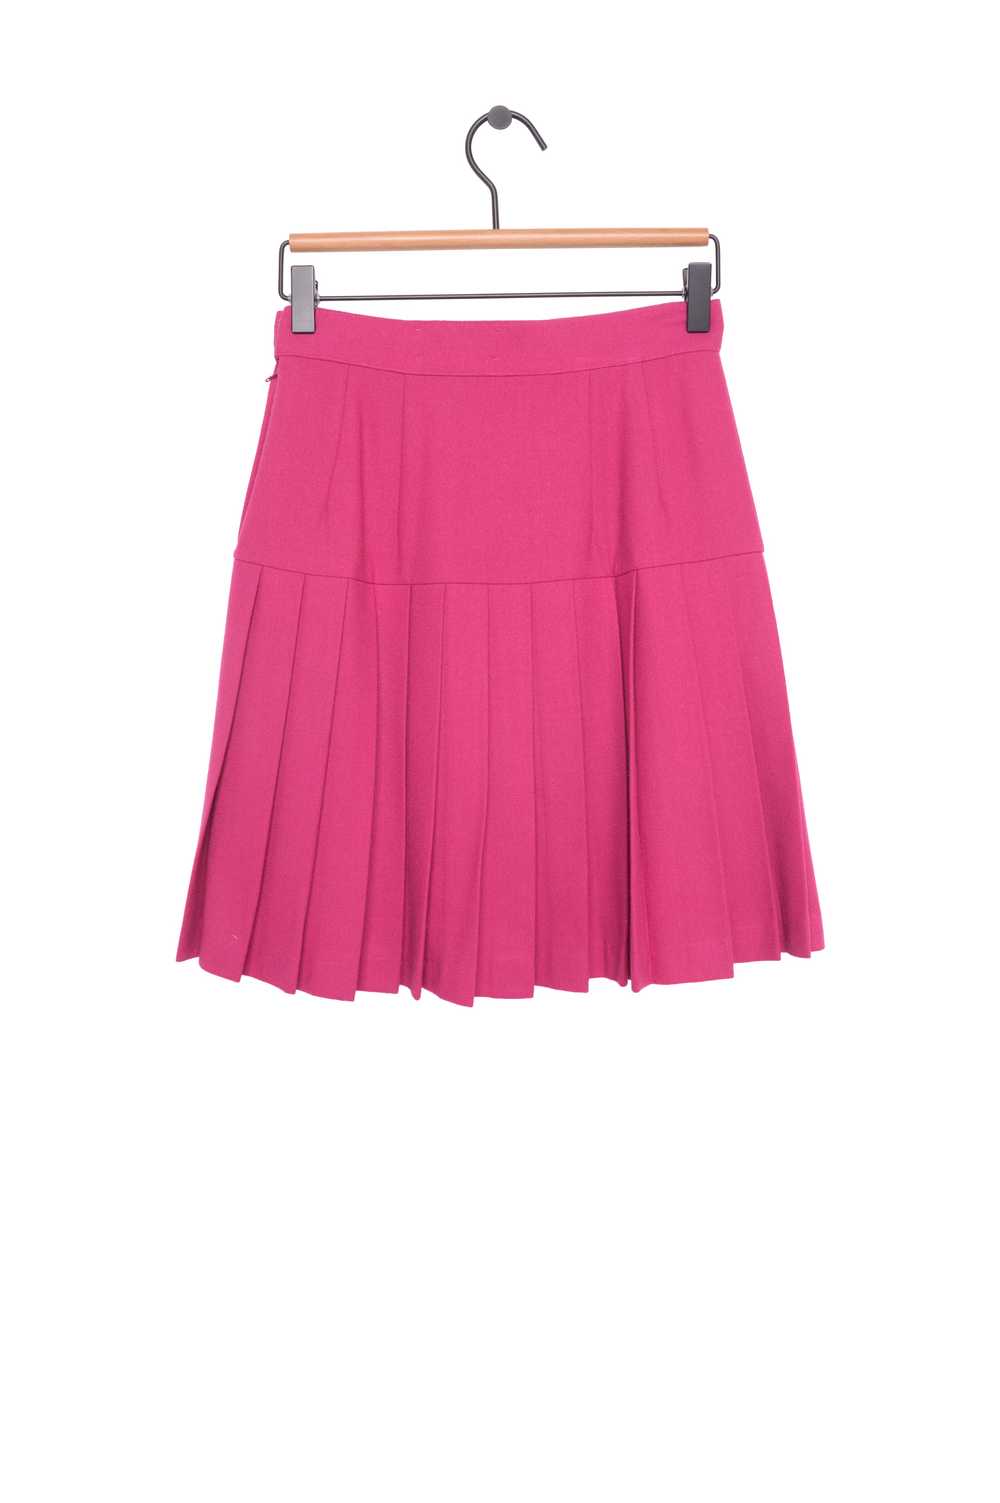 1990s Pleated Mini Skirt - image 2